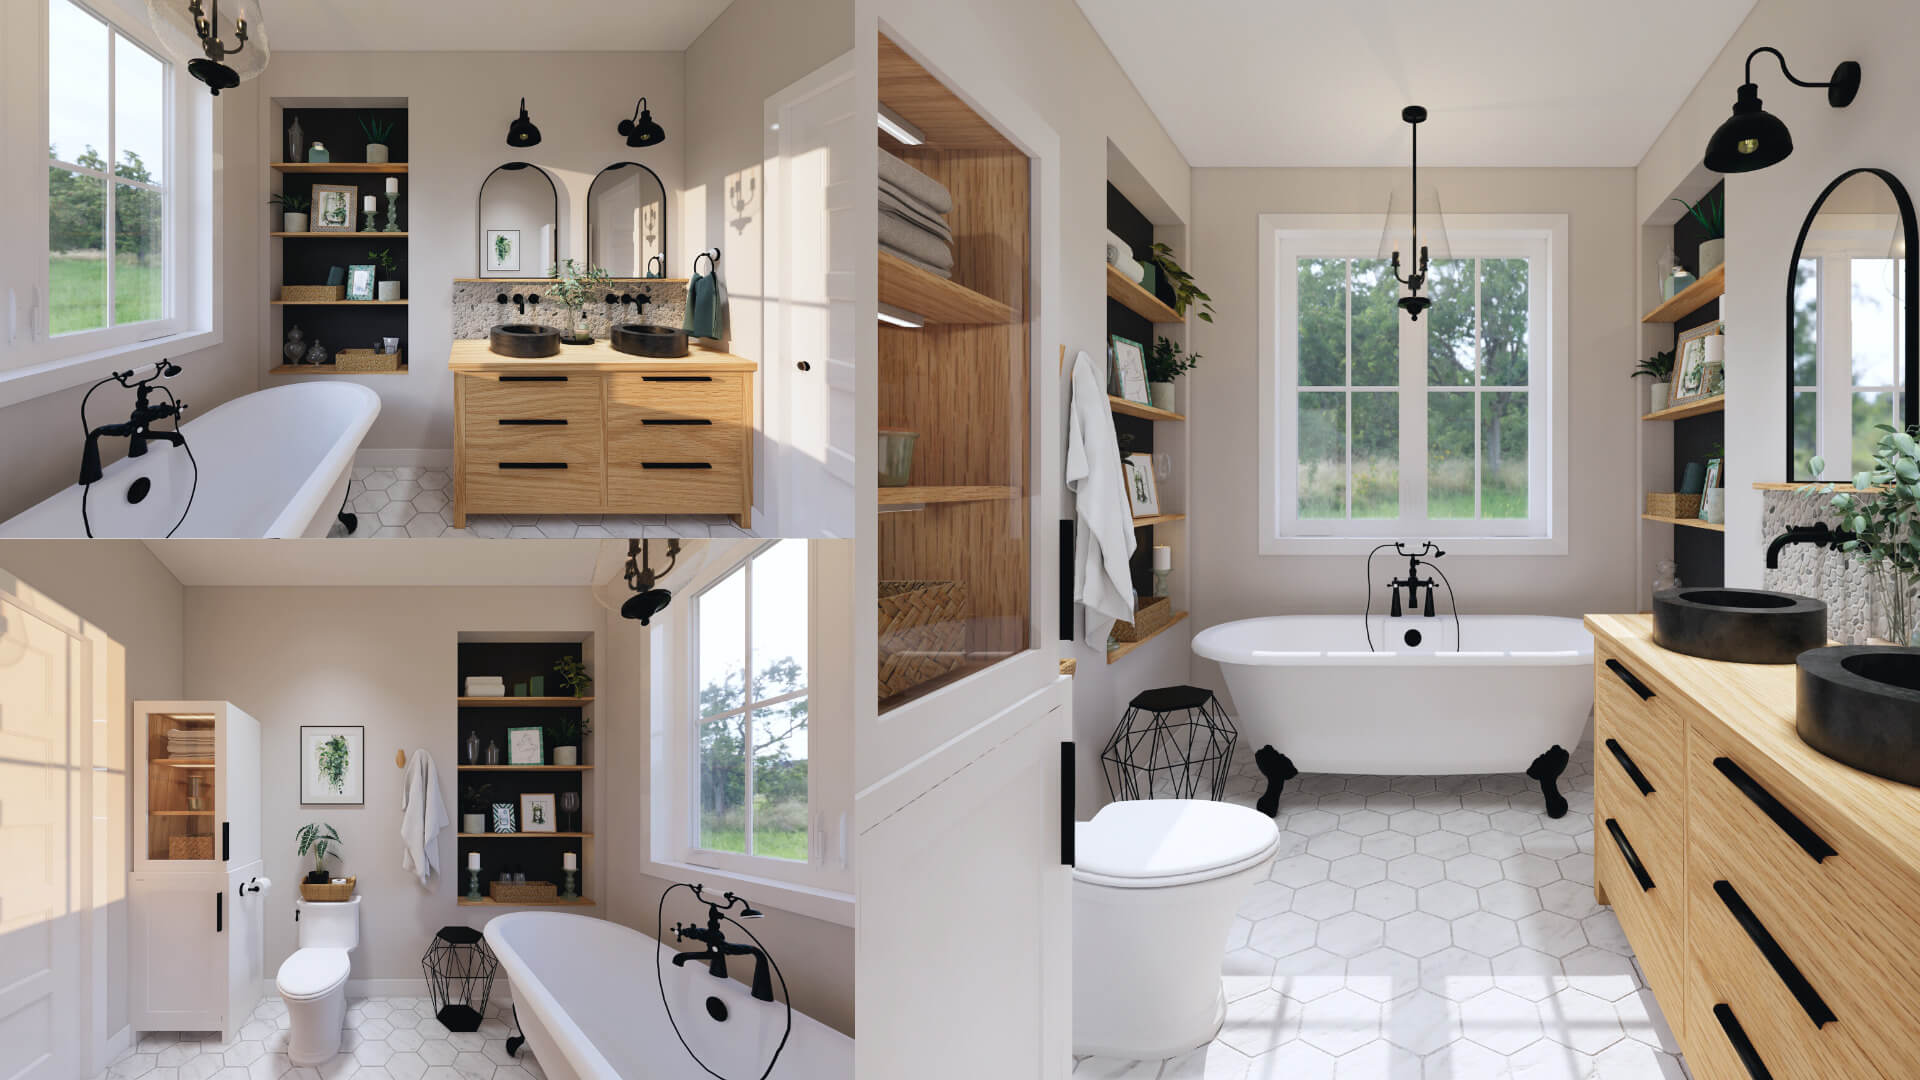 Rendus 3D d'une salle de bain farmhouse moderne, réalisés par une designer d'intérieur de Granby.